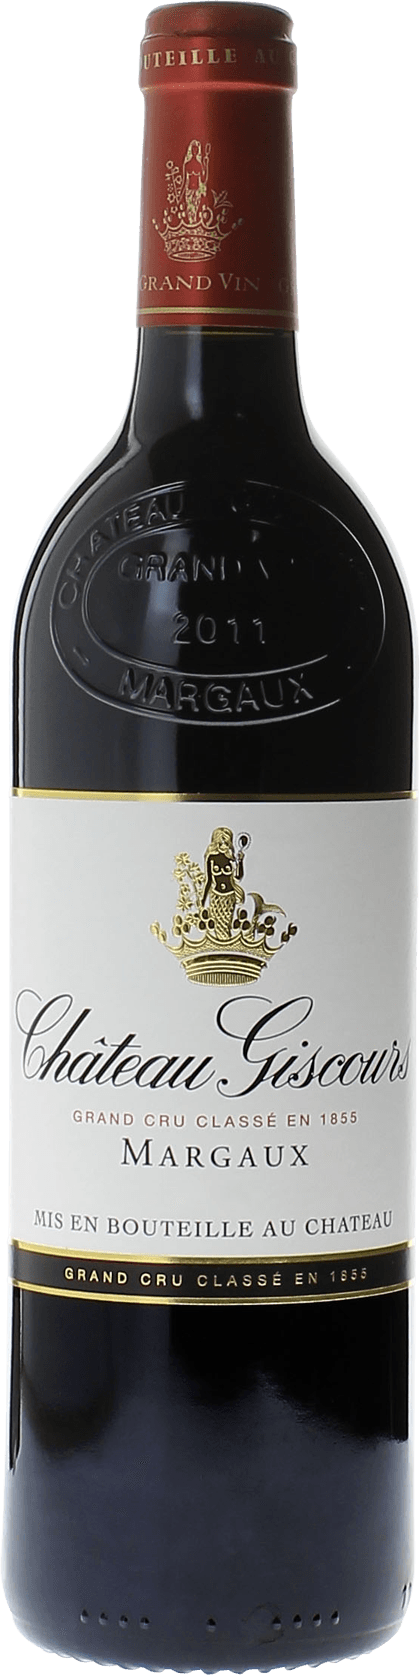 Giscours 2004 3me Grand cru class Margaux, Bordeaux rouge